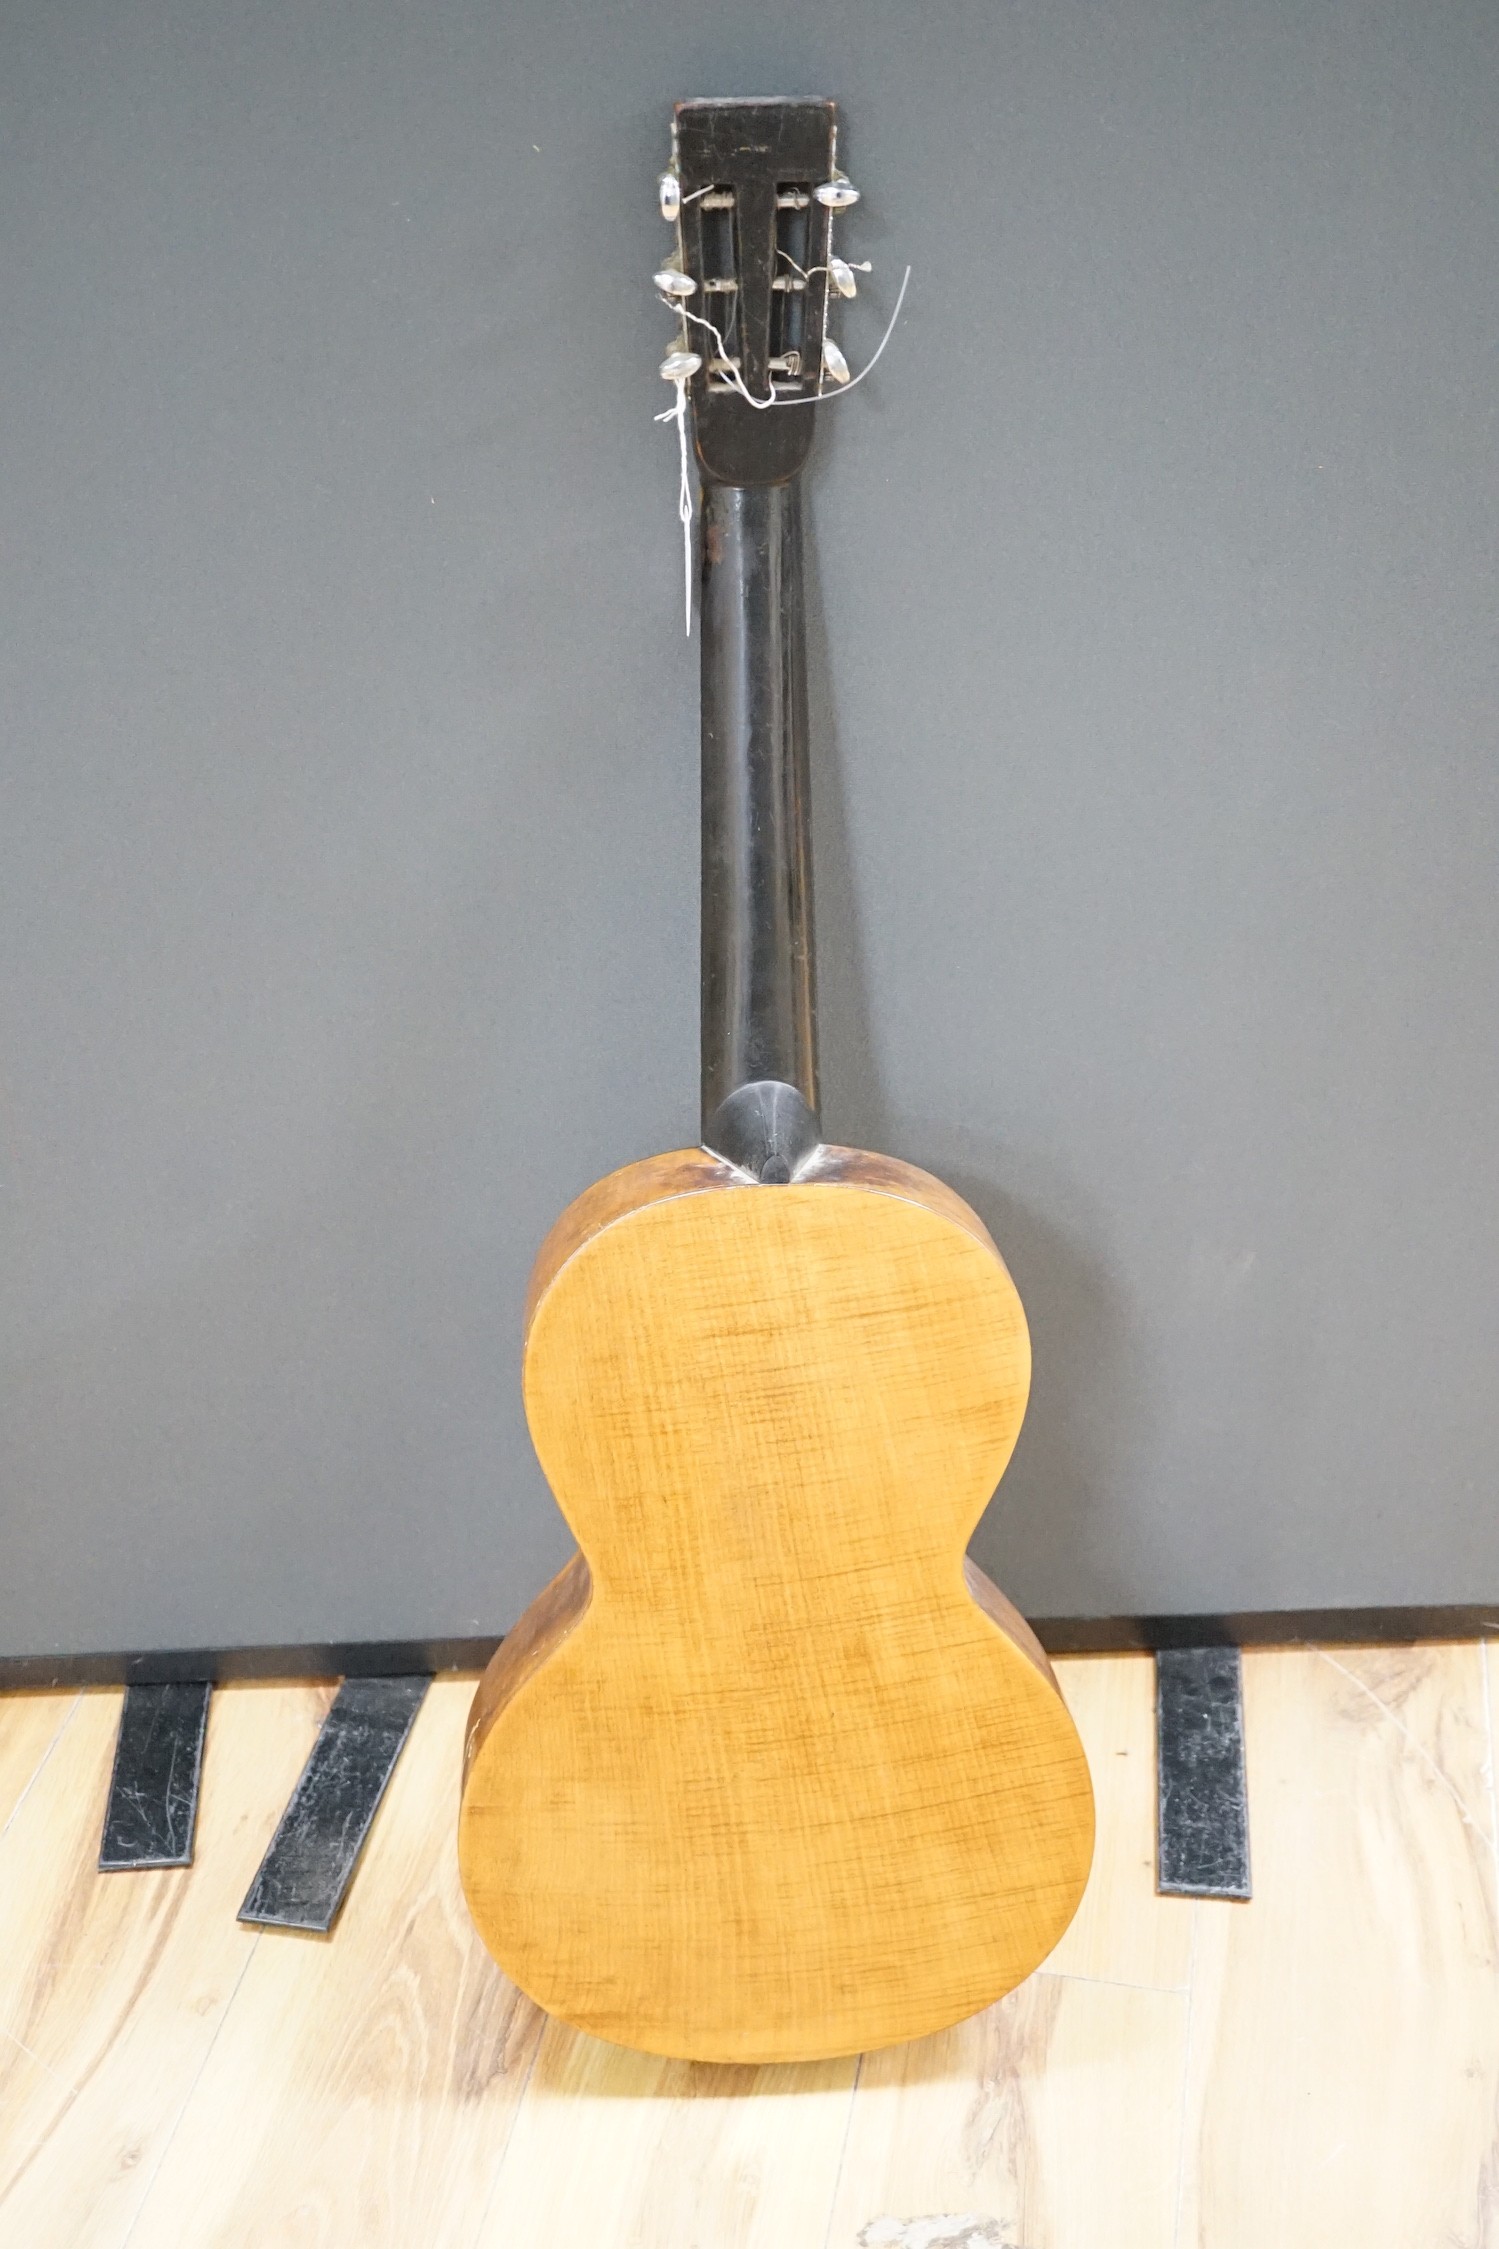 A Parlour guitar